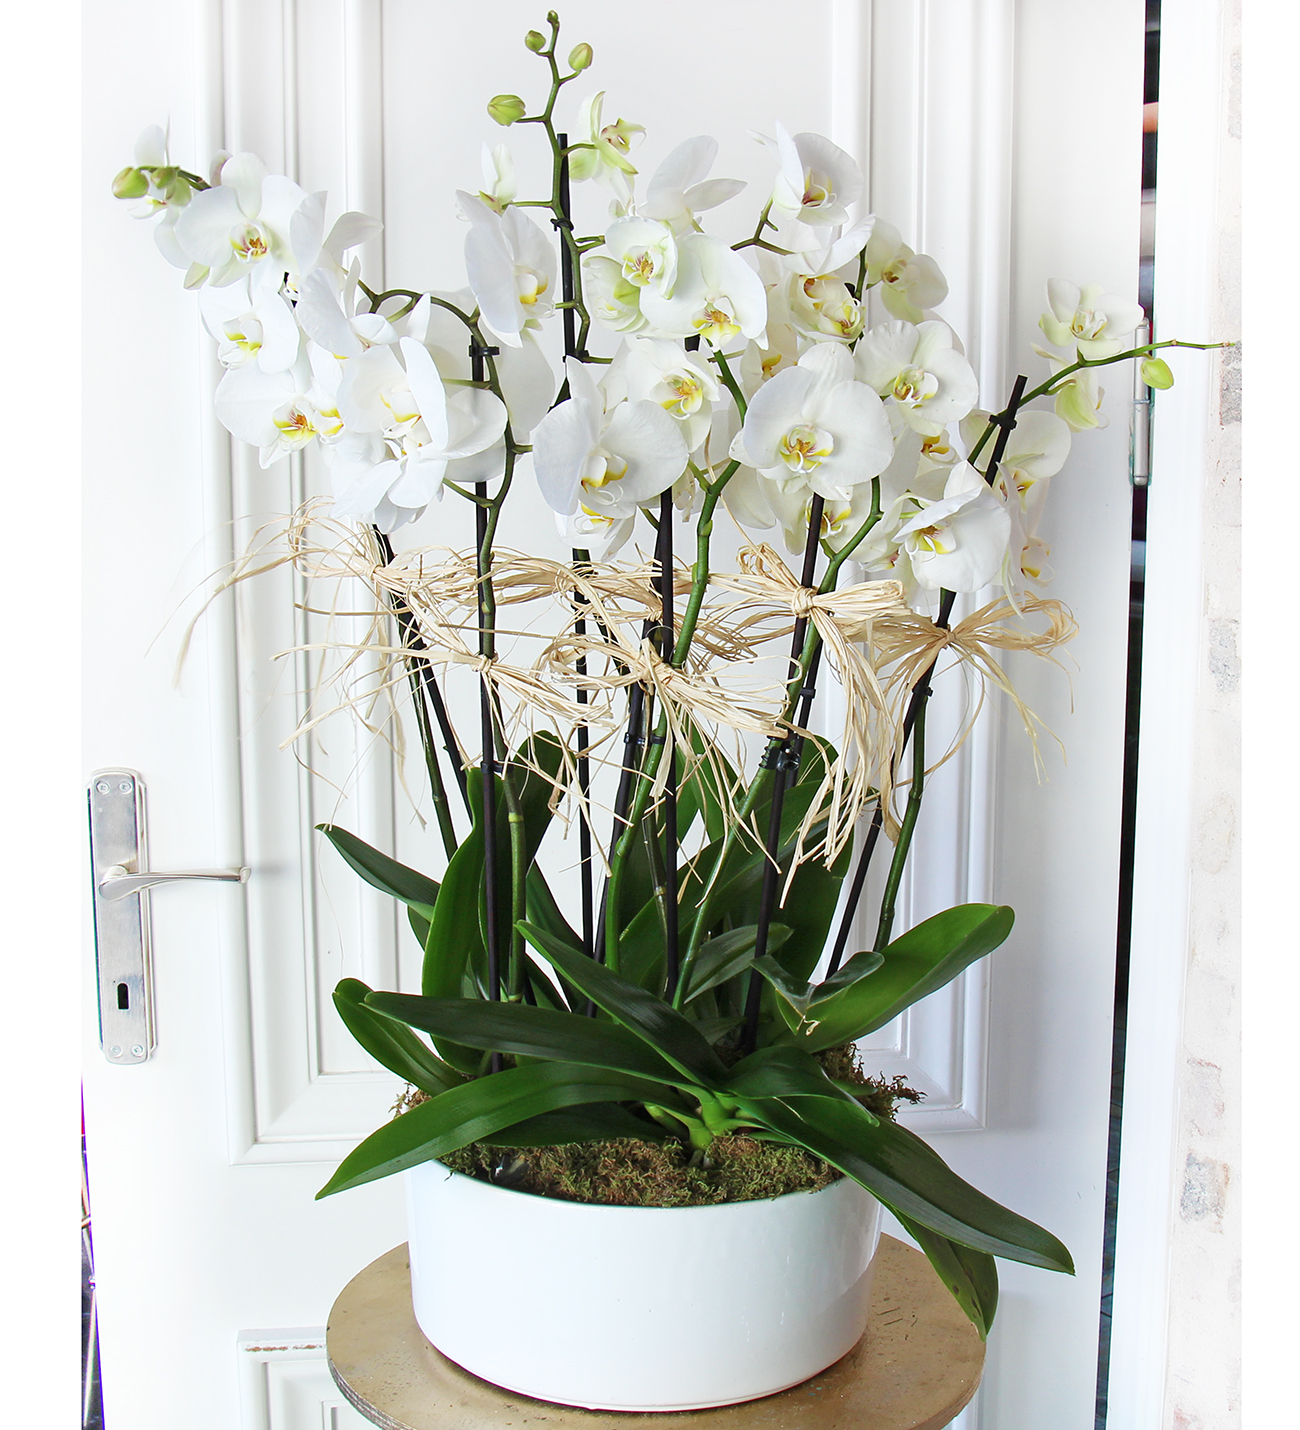 Matila seramik vazo da 8 dallı beyaz orkide tasarımı